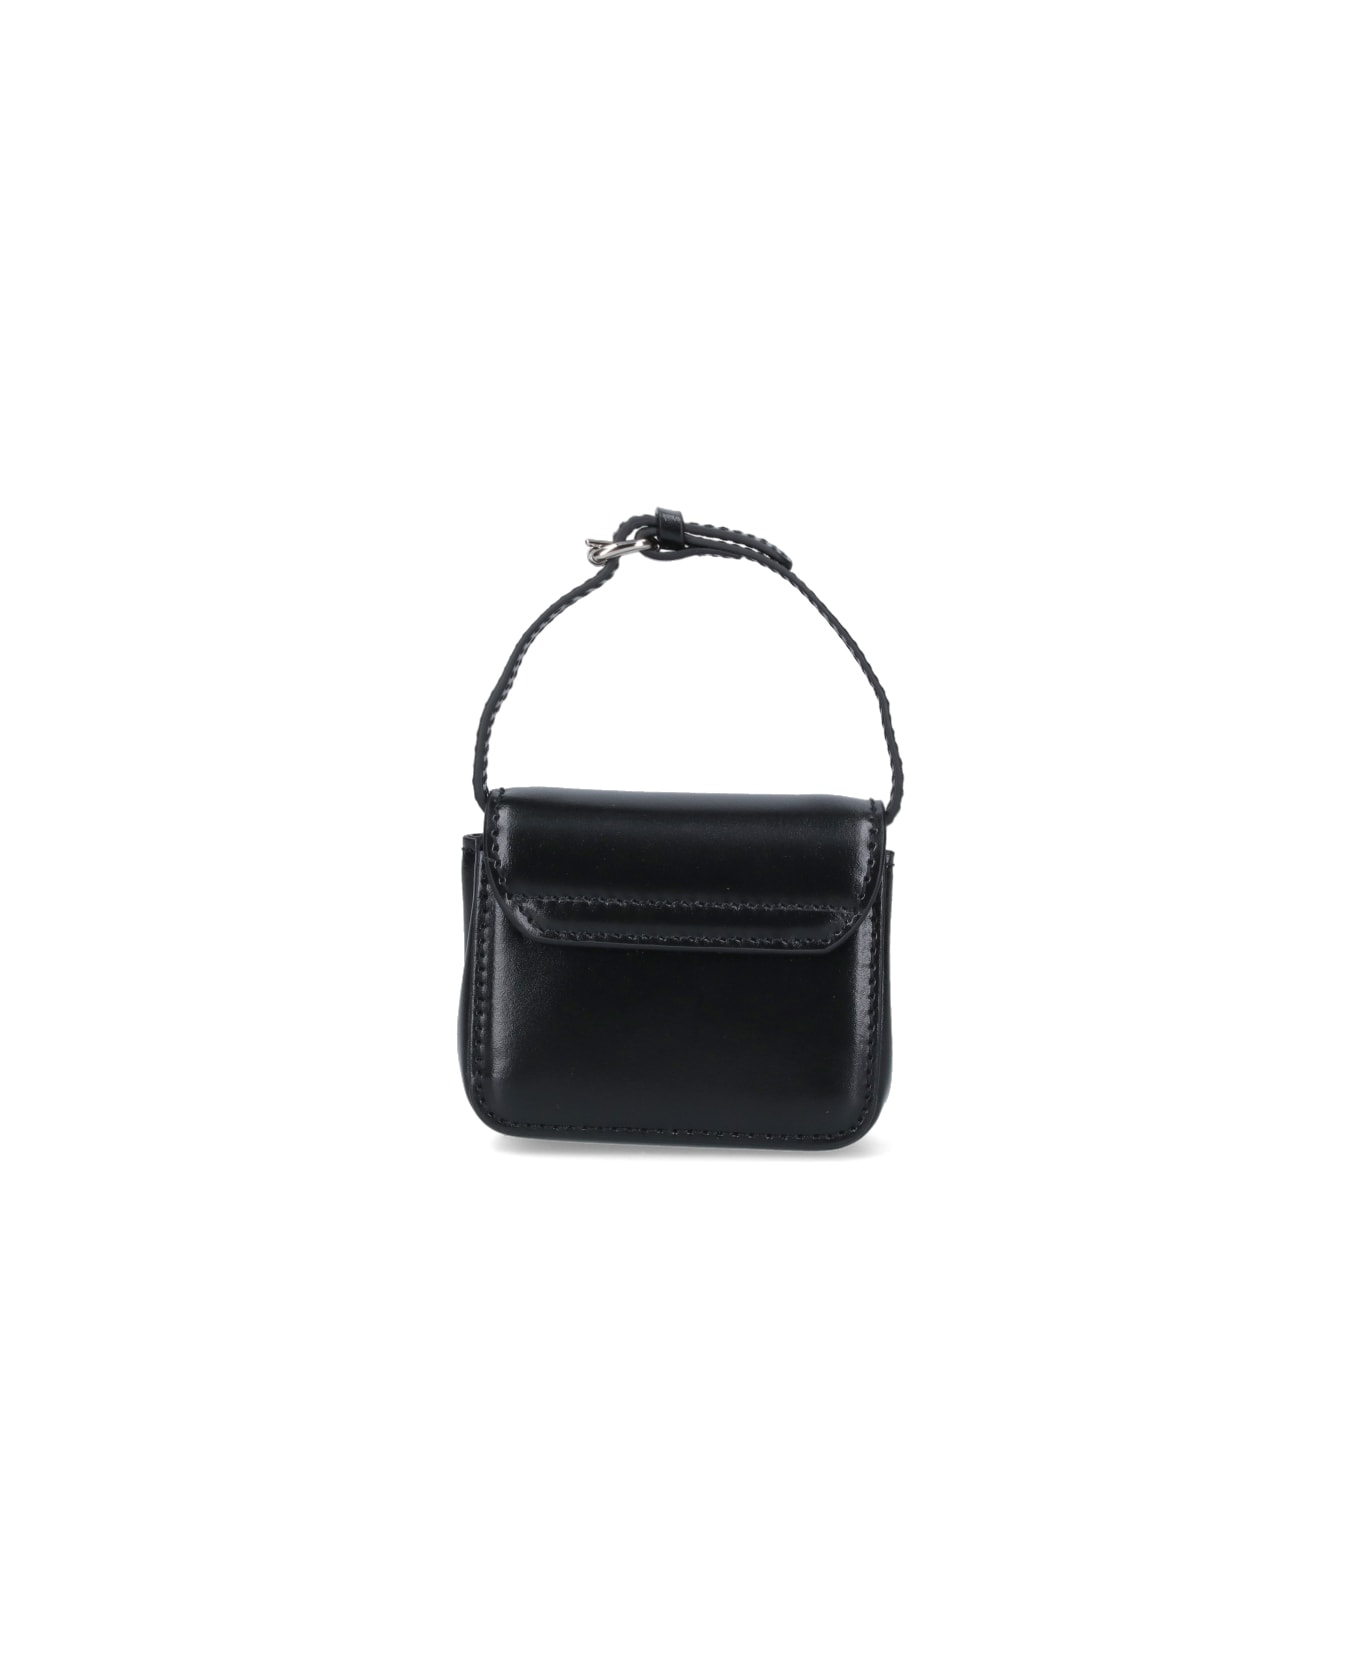 Vivienne Westwood "linda" Mini Bag - Black   バッグ